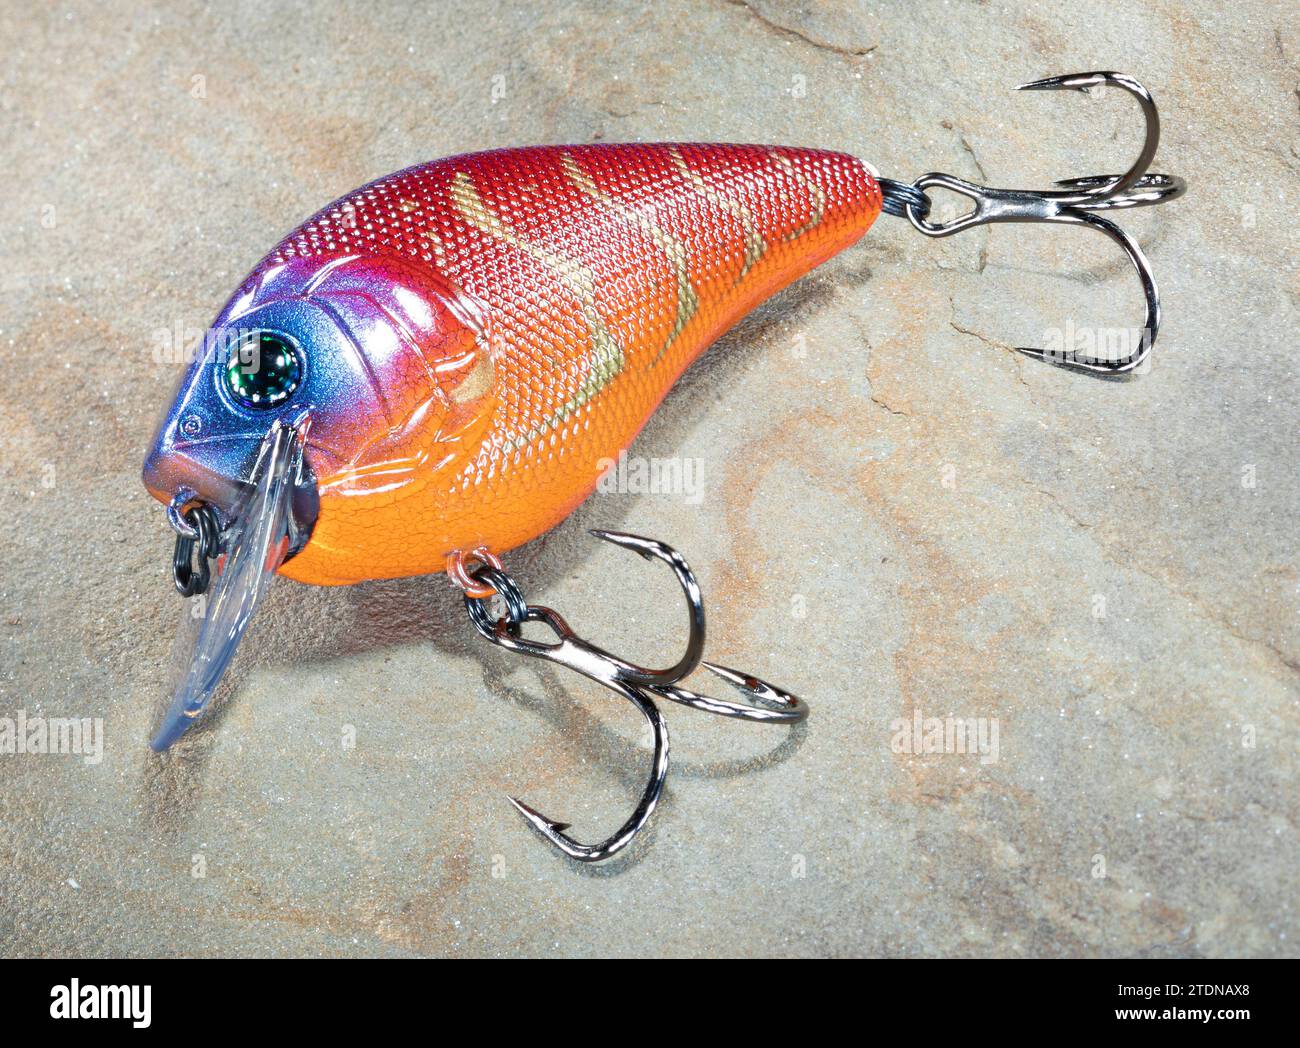 Treble fish hook on blue background Stock Photo - Alamy